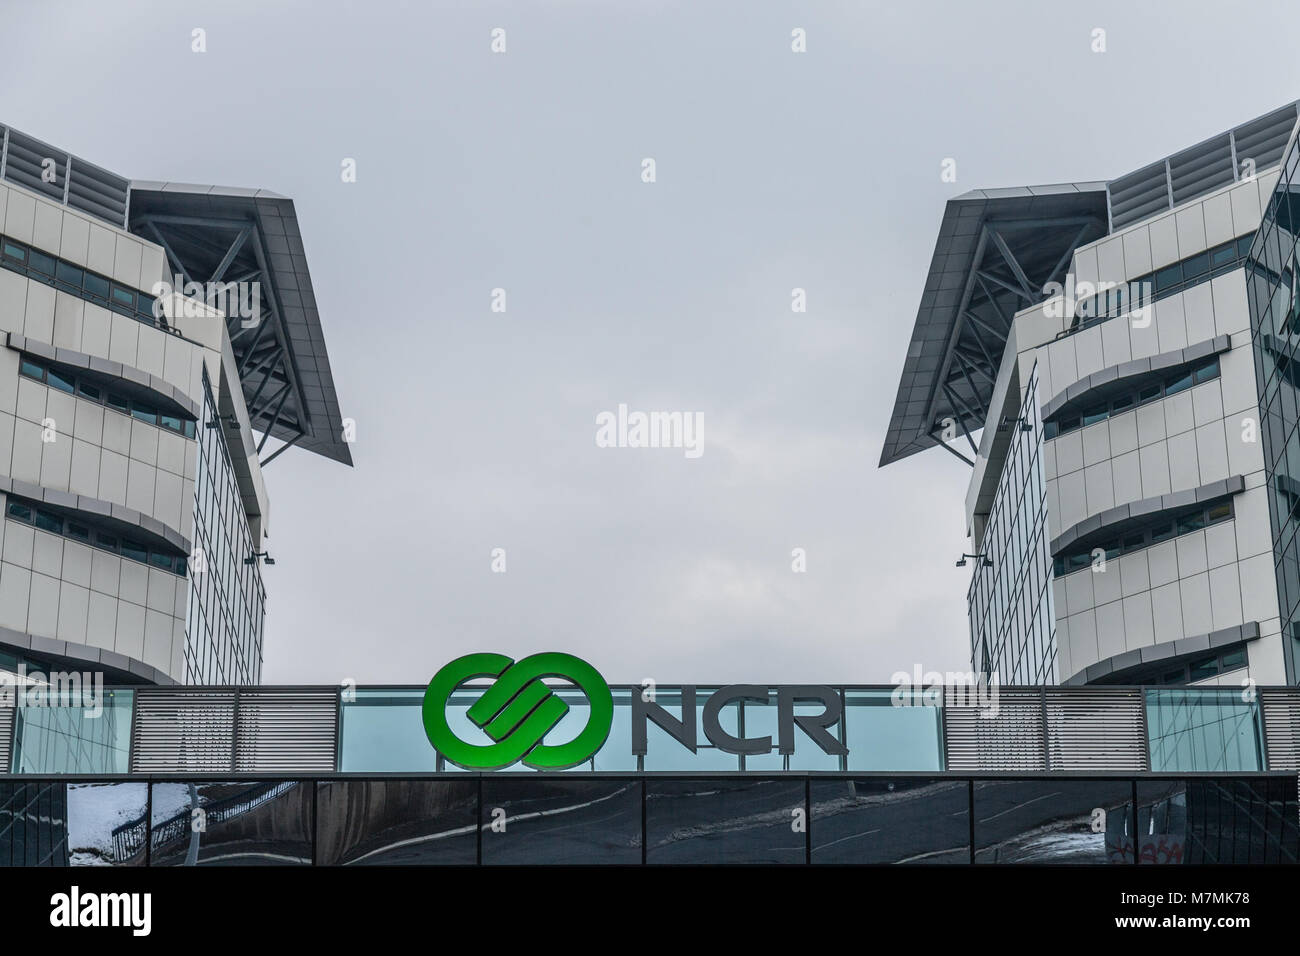 Belgrad, Serbien - 3. MÄRZ 2018: NCR Corporation Logo auf Ihrer Hauptniederlassung für Serbien. NCR ist eines der führenden Unternehmen im Bereich IT-Support und im Compu Stockfoto